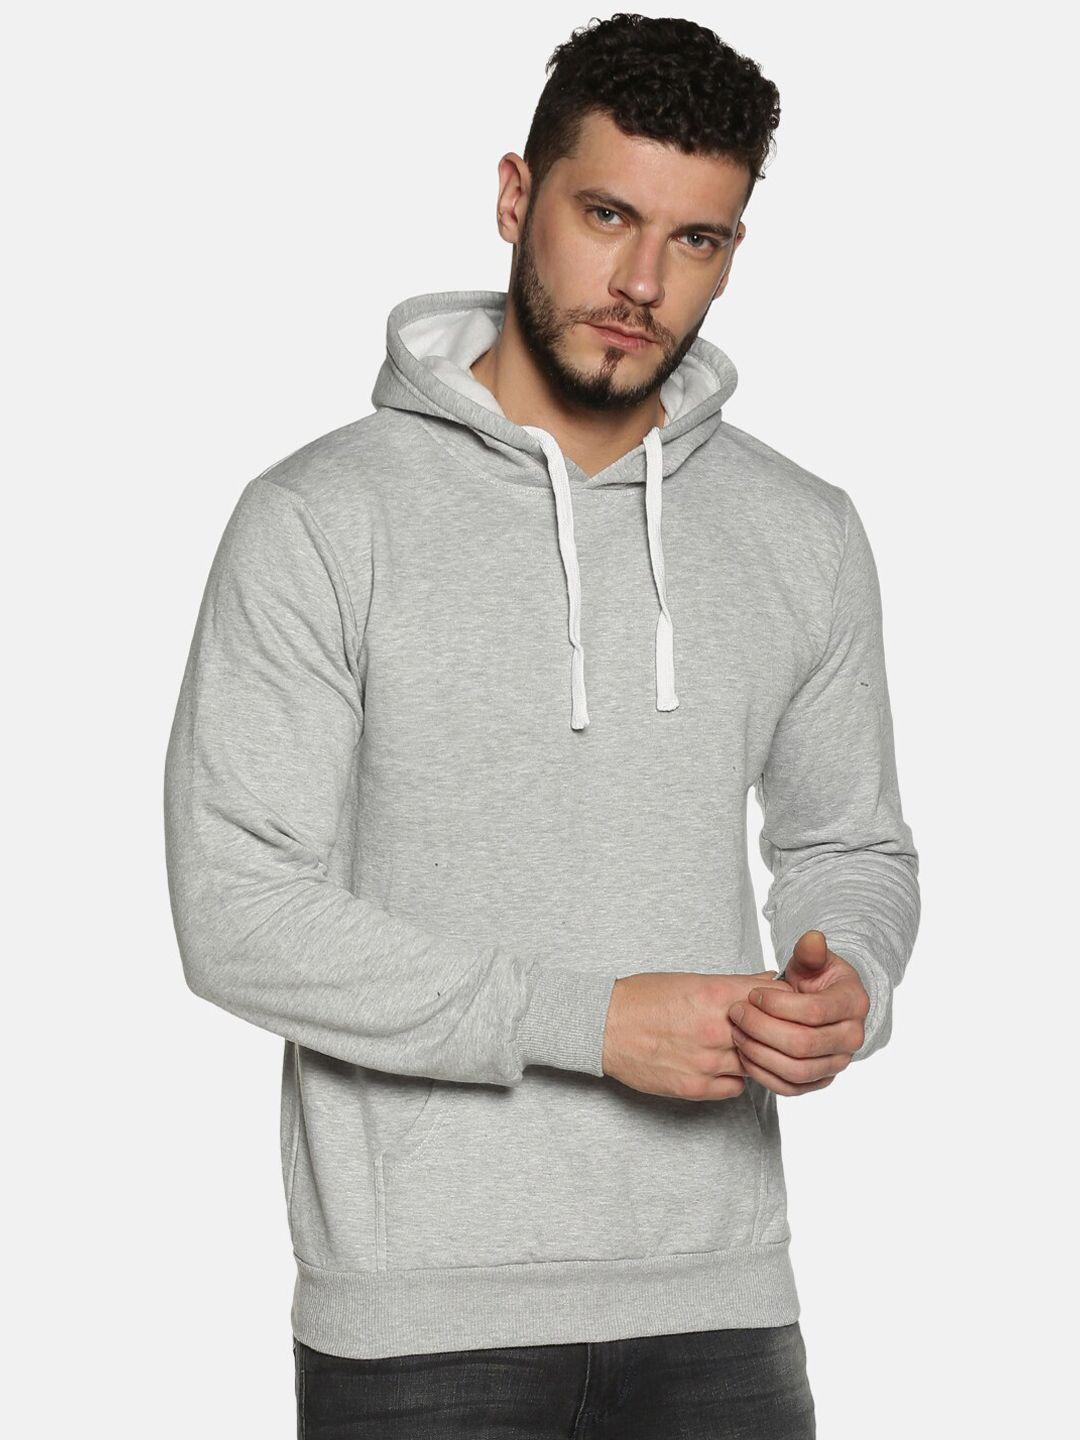 instafab-men-grey-solid-hooded-sweatshirt